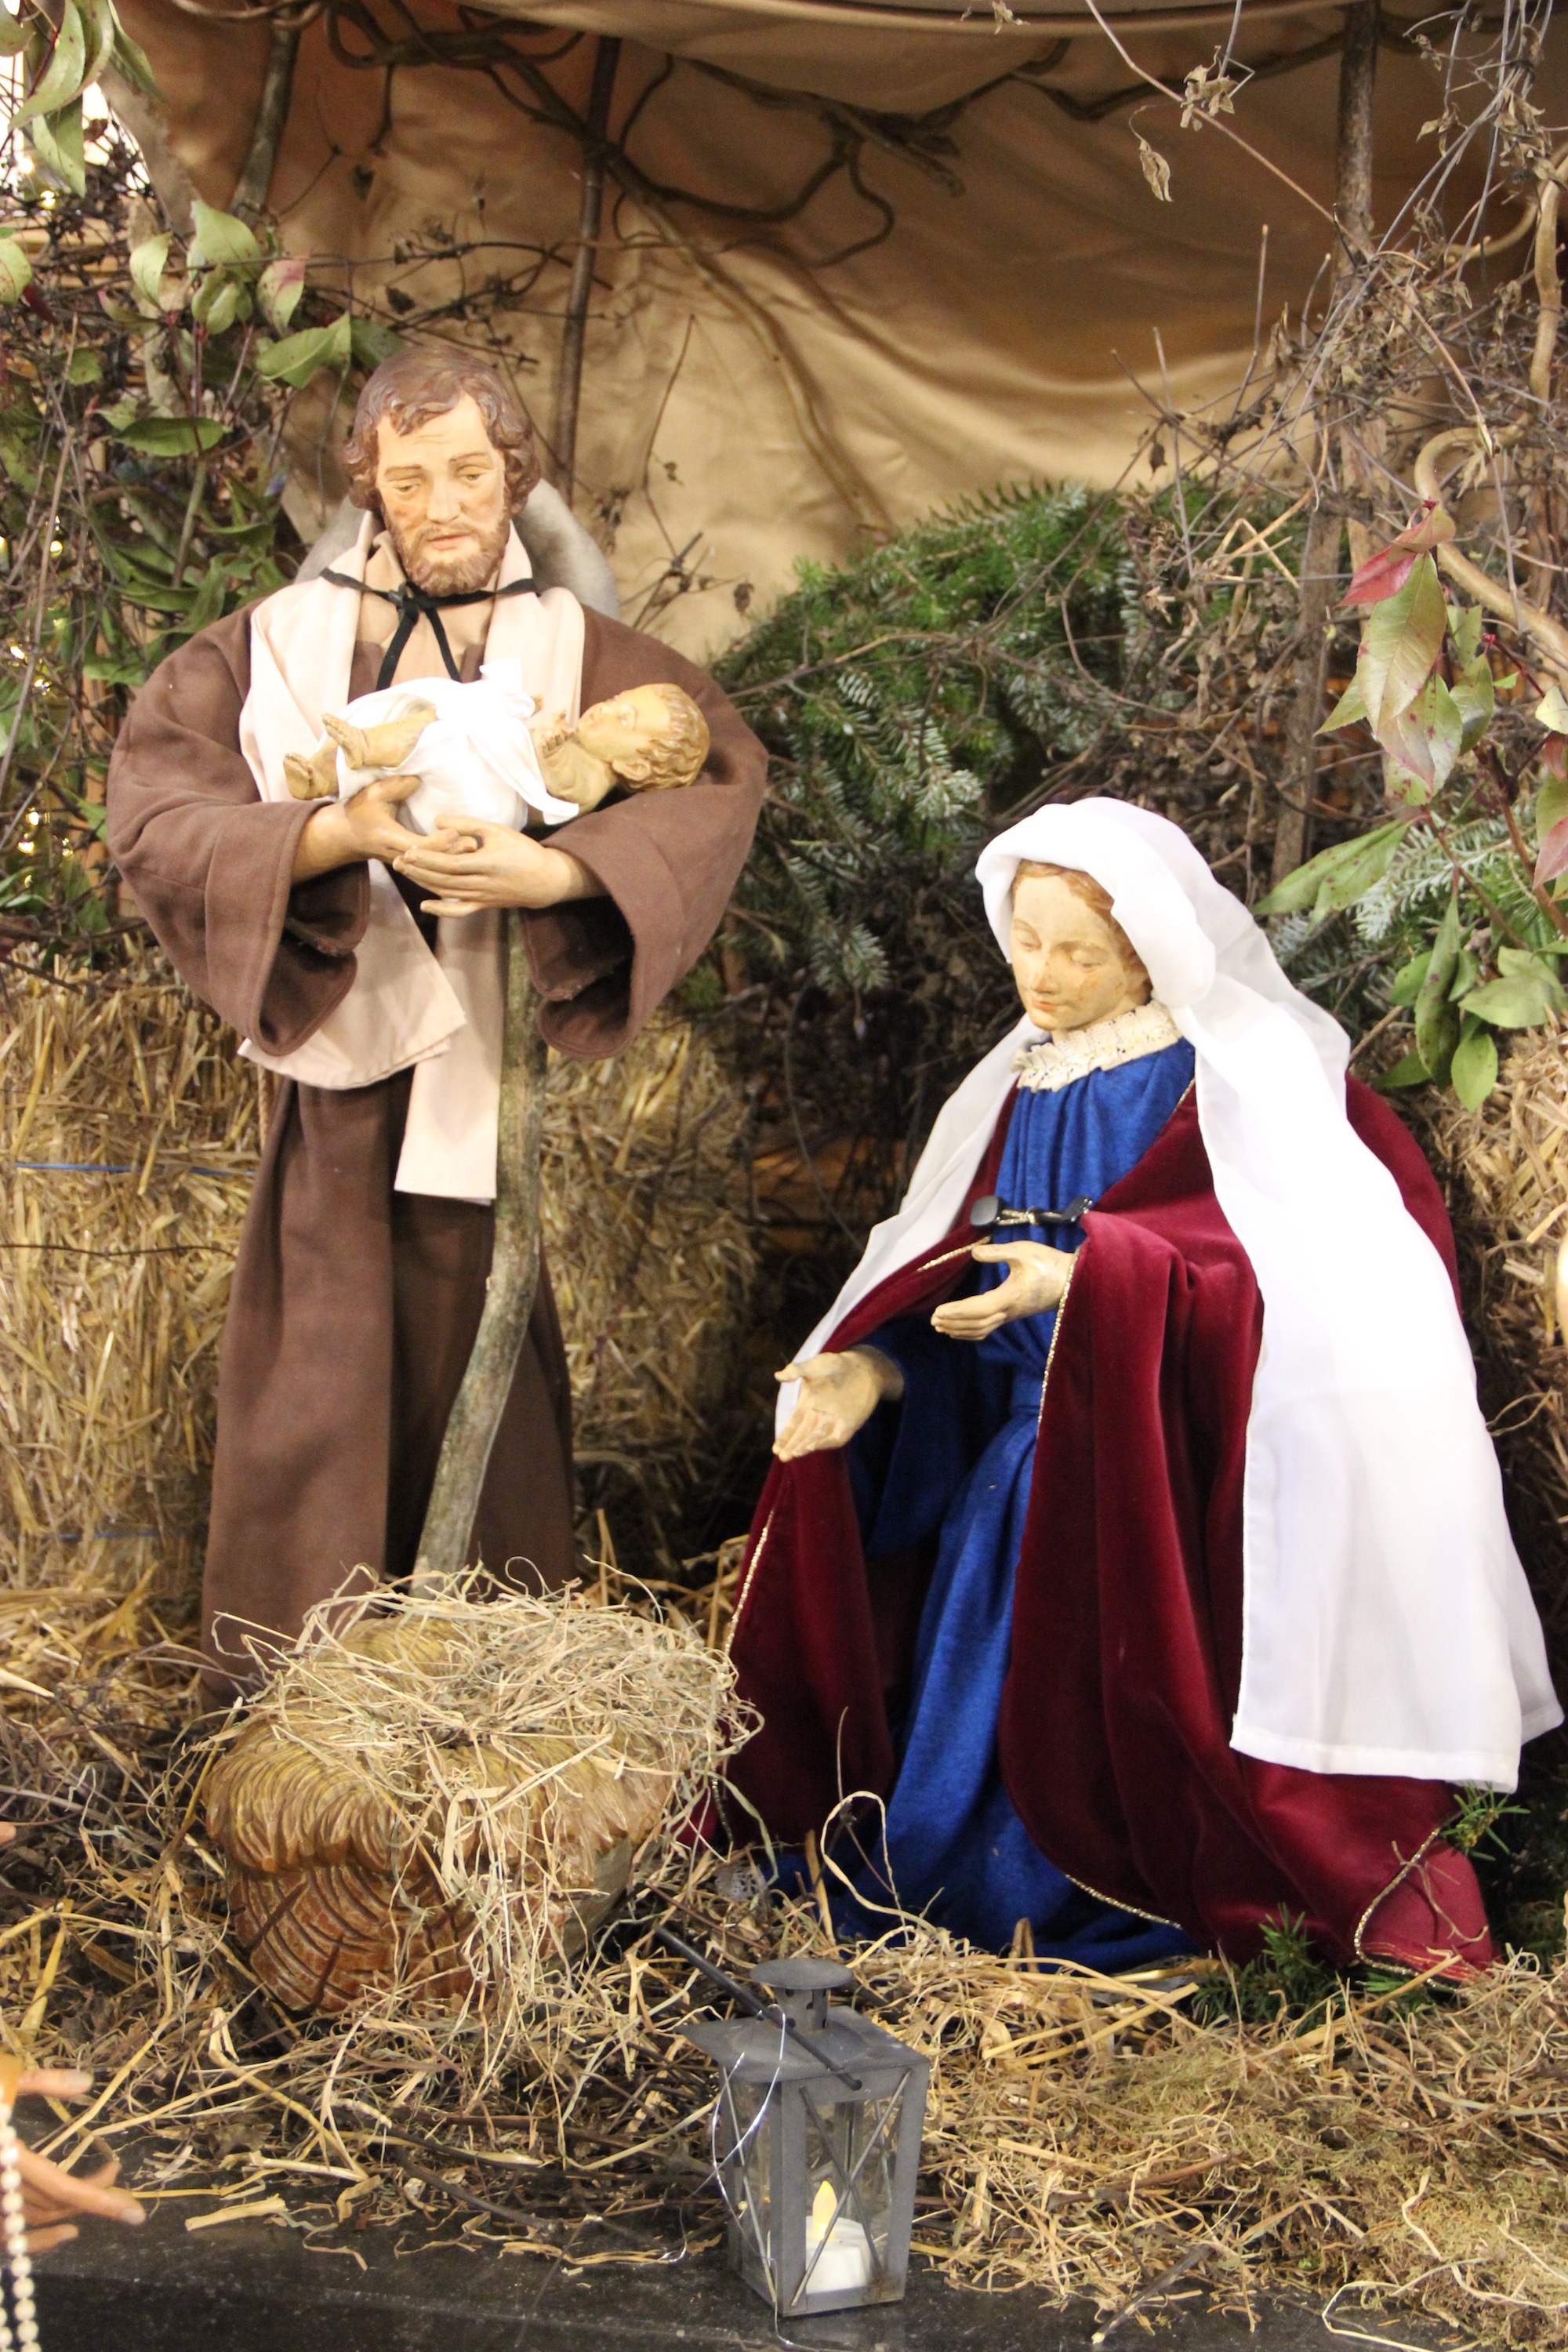 In St. Josef in Straß wird das Jesuskind nach den Weihnachtstagen traditionell der Josefsfigur in den Arm gelegt. (c) Andrea Thomas